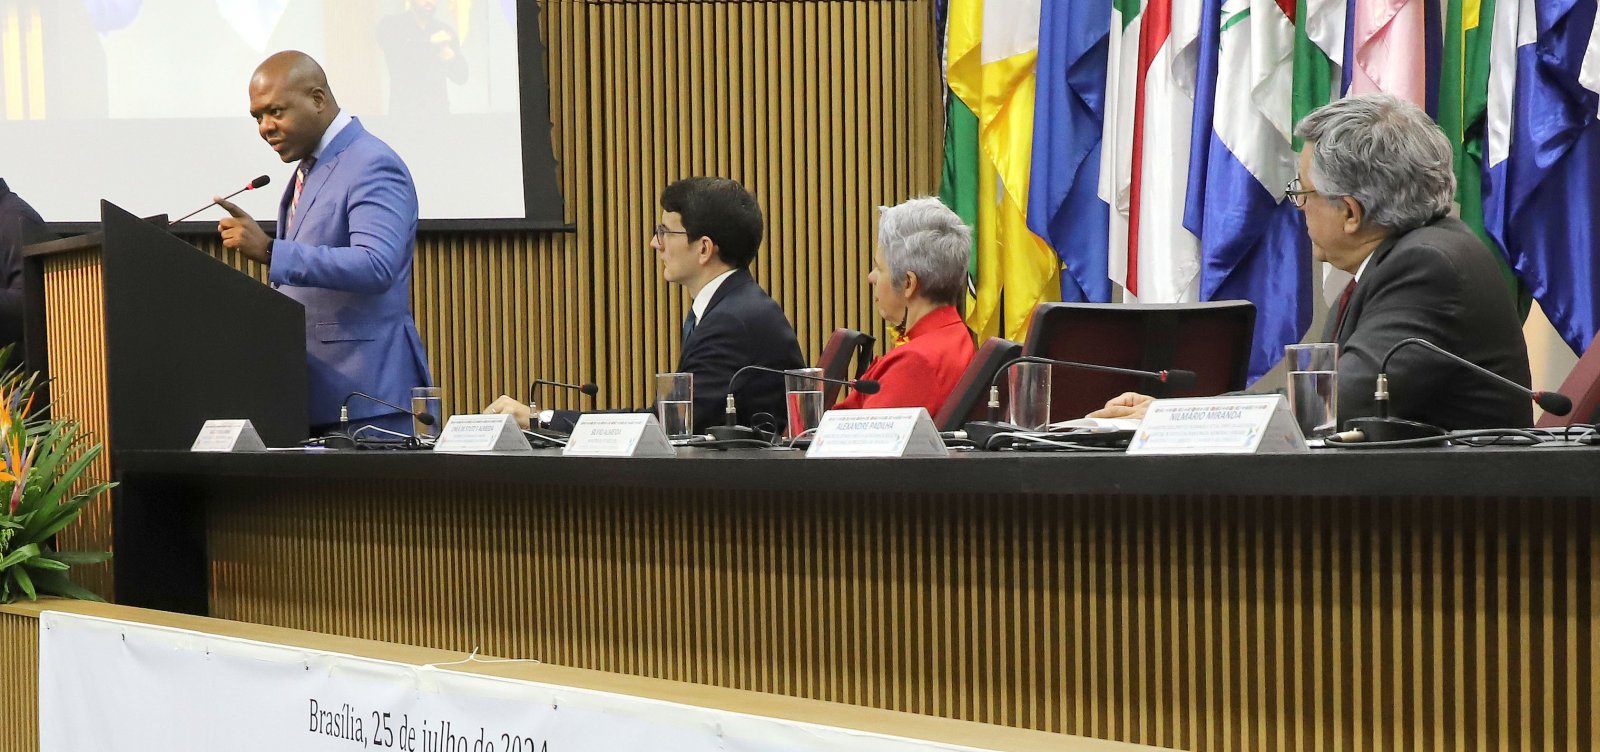 Comissão de Anistia pede perdão aos japoneses perseguidos no Brasil durante Segunda Guerra Mundial